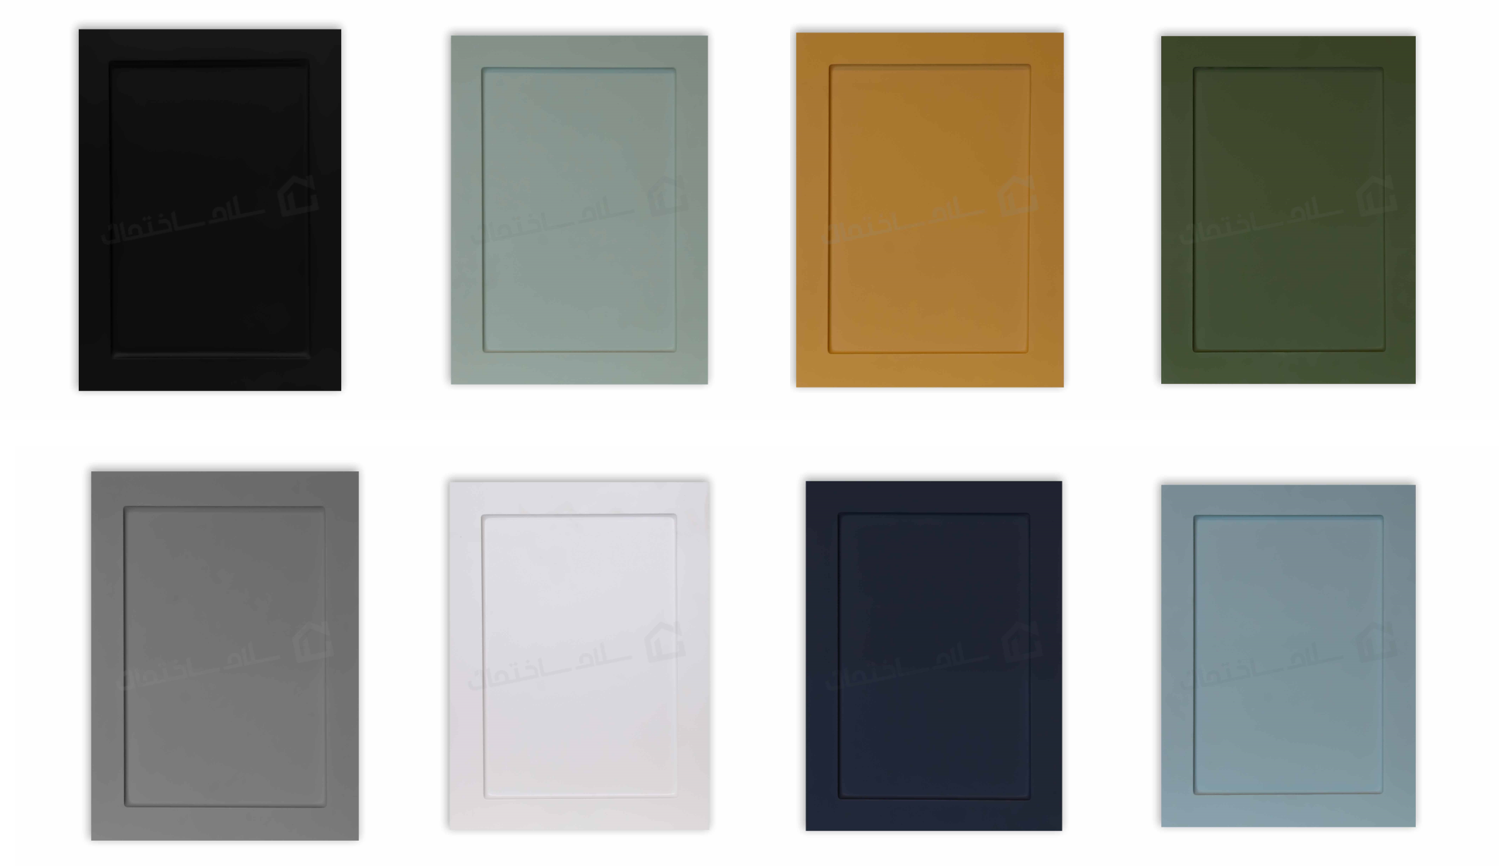 کابینت آماده ممبران نئوکلاسیک در 8 رنگ مختلف؛ مشکی، سفید، آبی، سبز، قهوه ای، طوسی